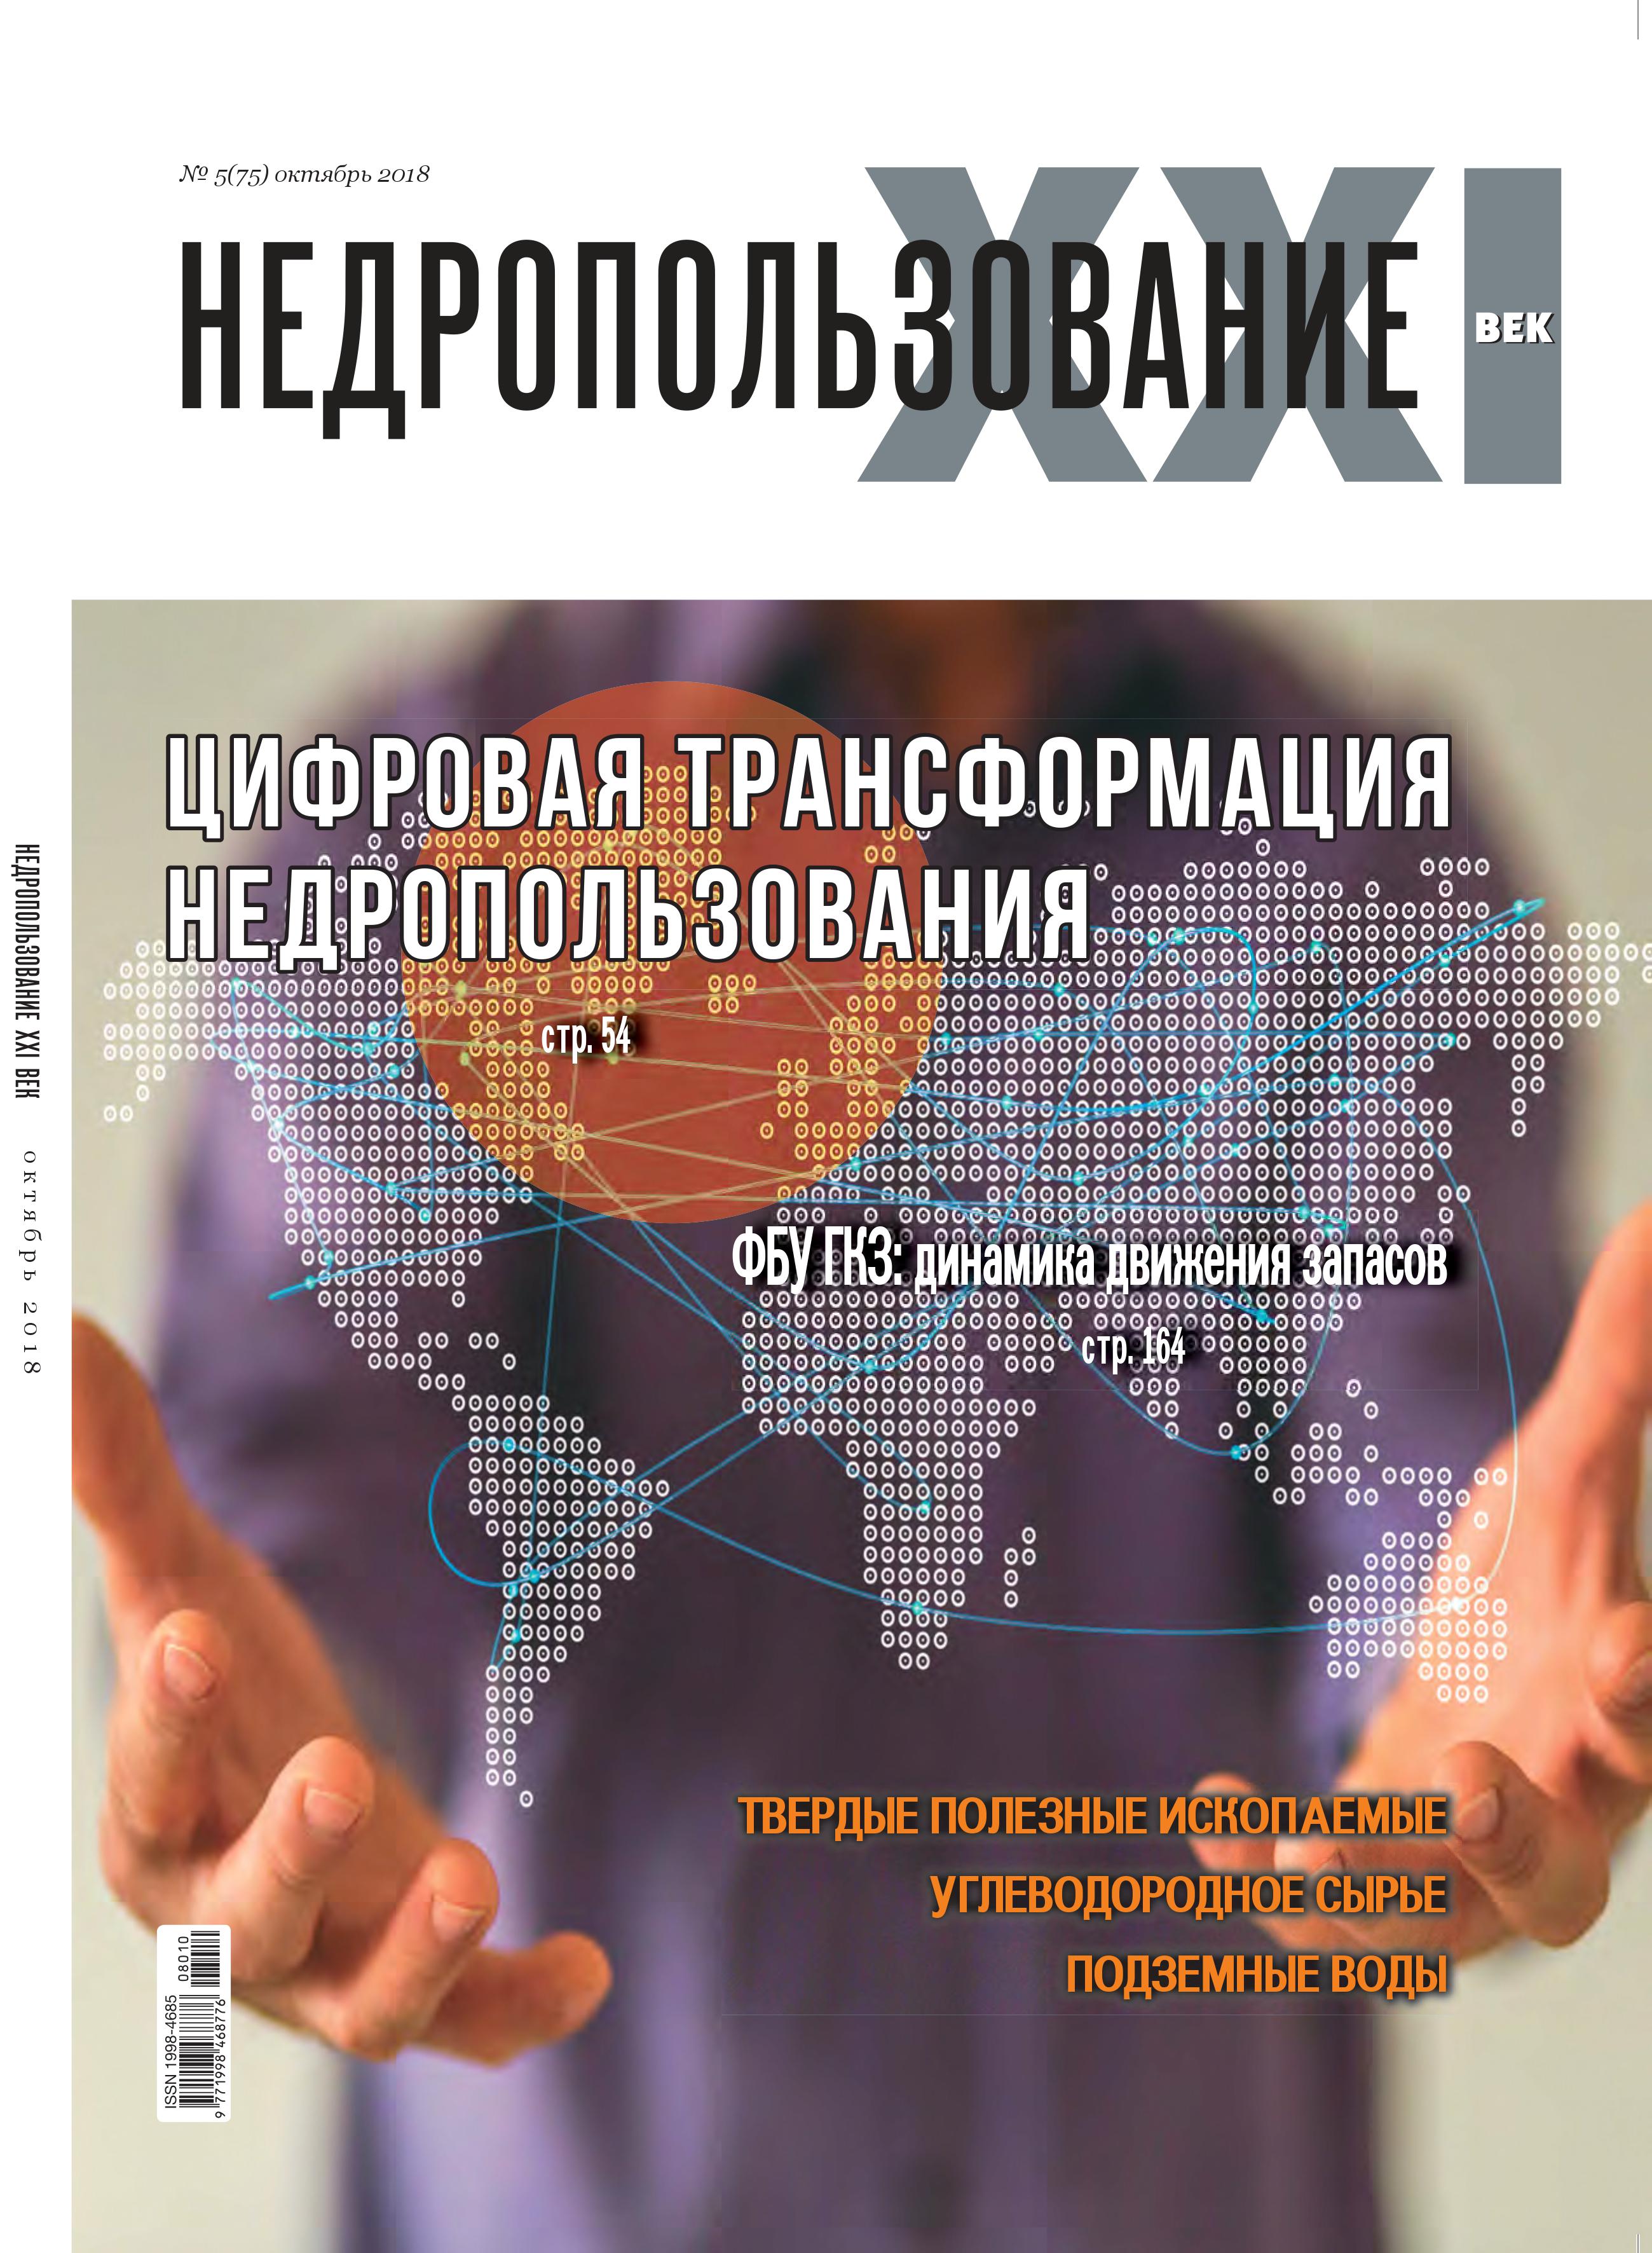 Выход очередного номера журнала "Недропользование XXI век" (№5 - октябрь 2018 г.)